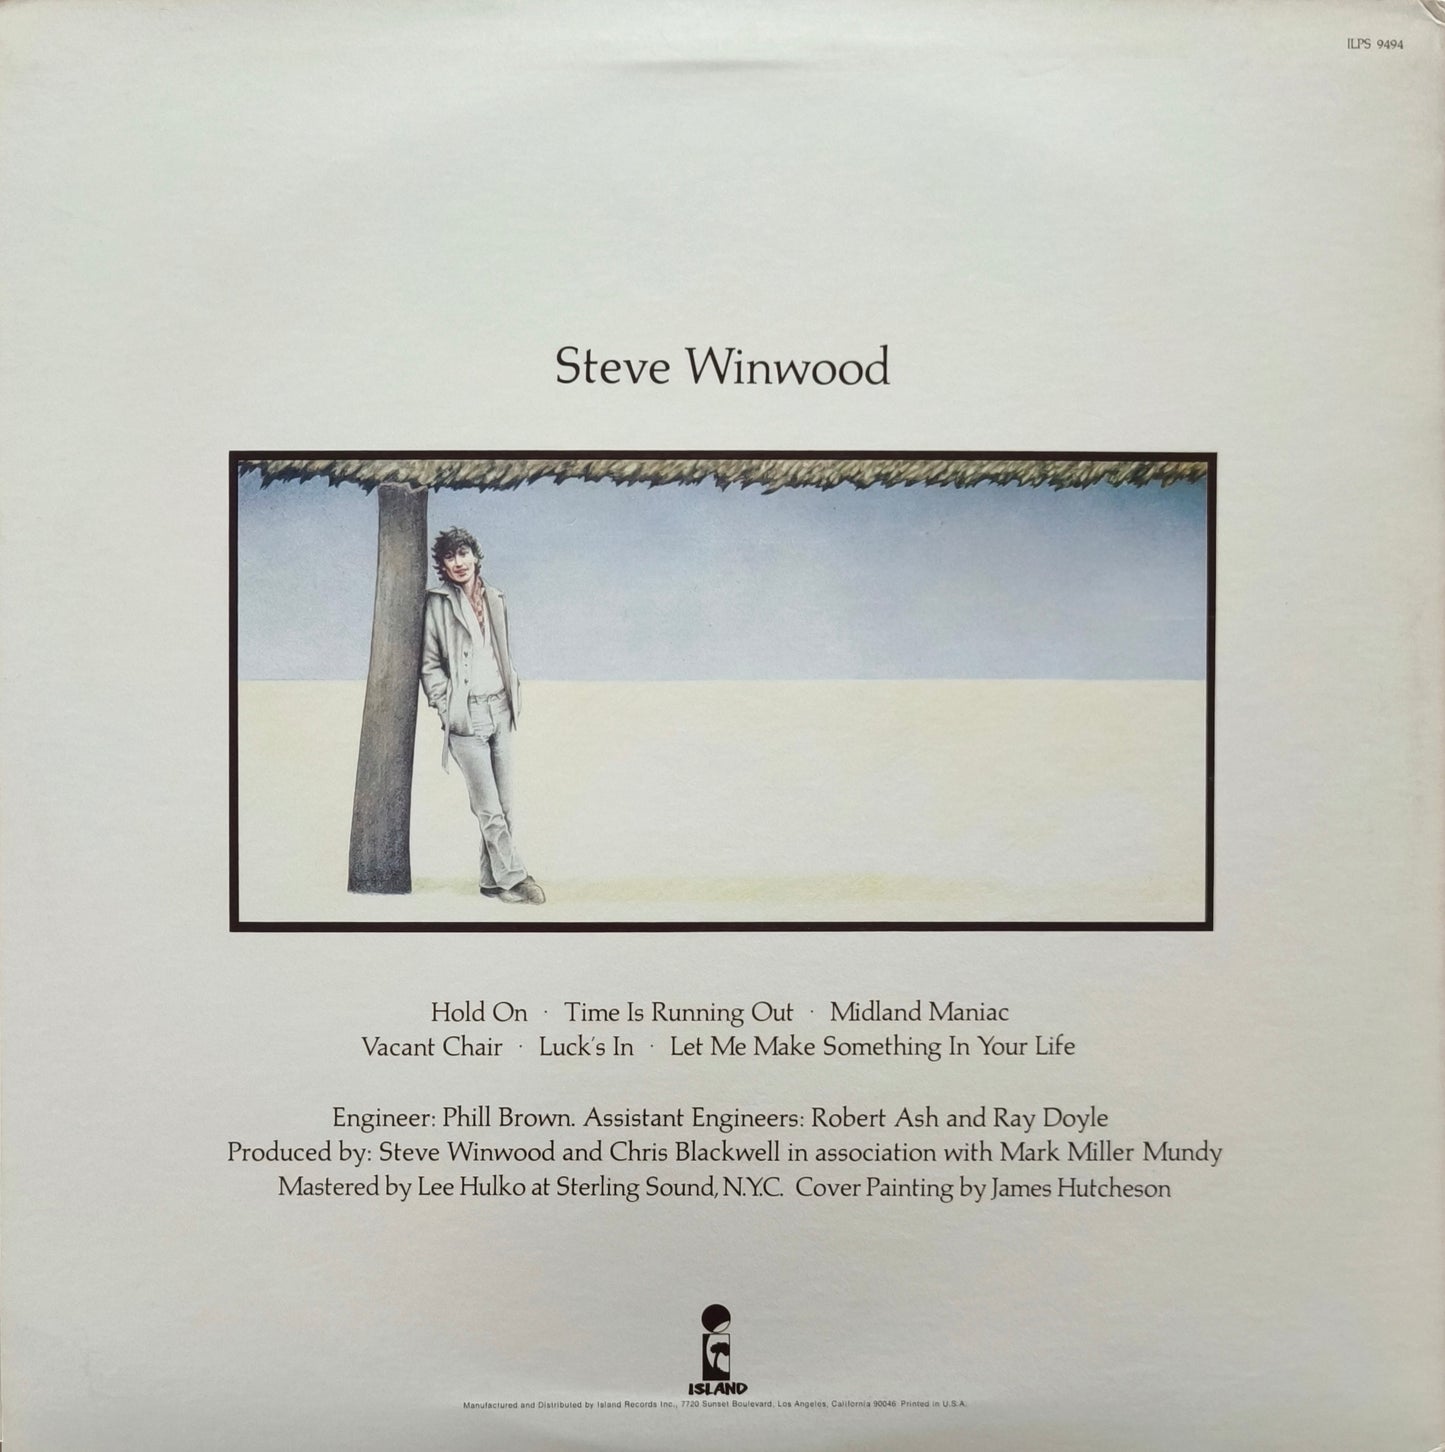 STEVE WINWOOD - Steve Winwood (pressage US)